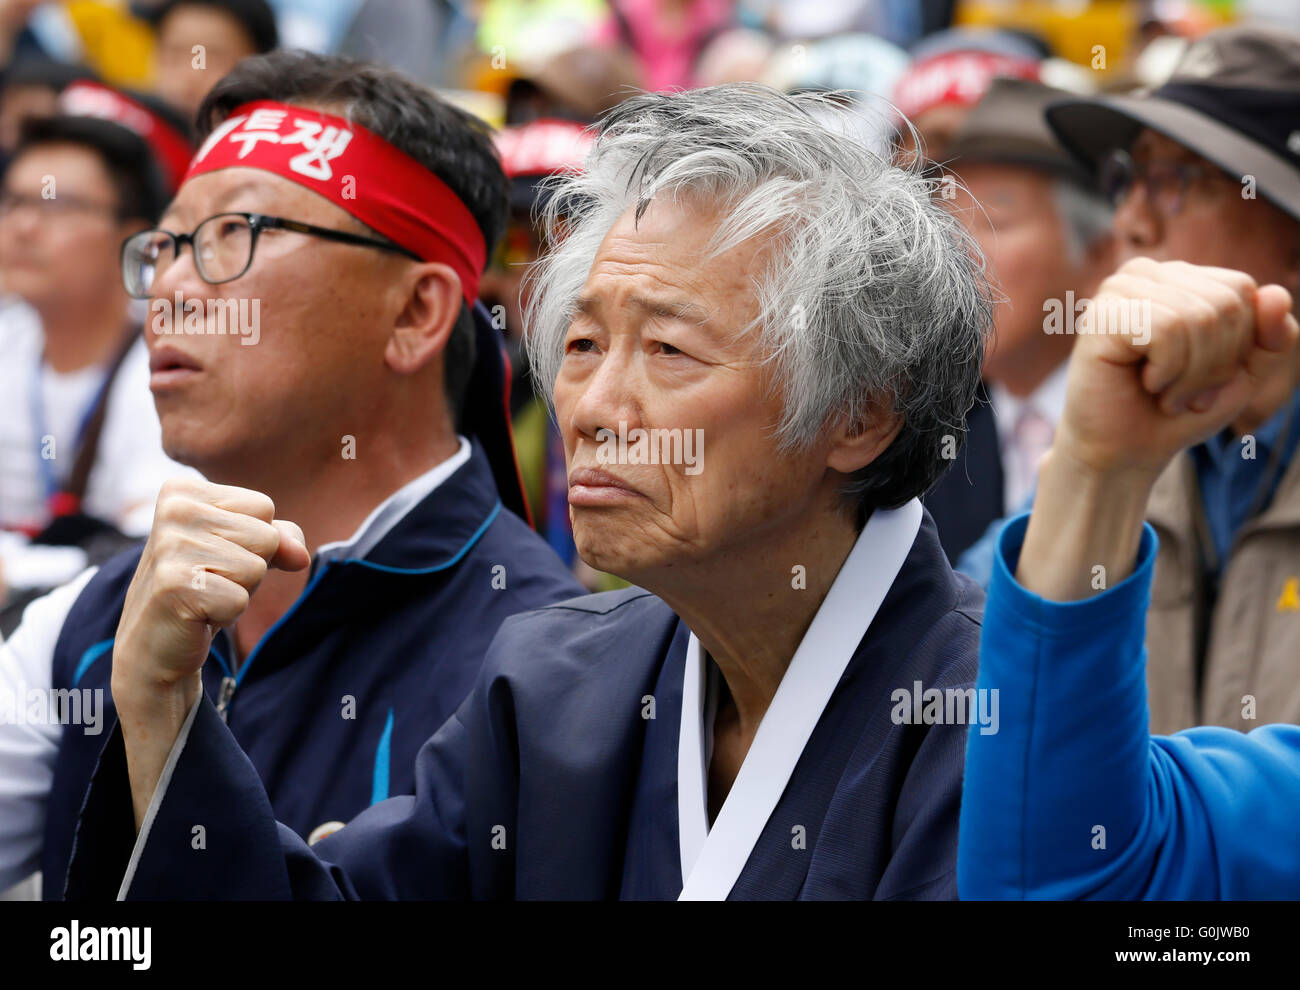 Premier mai, 1er mai 2016 : Baek Gi-wan (C, 84), militant sud-coréen pour la réforme sociale, la réunification des deux Corée et les droits de l'homme, assiste à un premier mai avec les travailleurs à Séoul, Corée du Sud. Environ 80 000 travailleurs des deux centrales du pays, les syndicats, la Confédération Coréenne des Syndicats (KCTU) et la Fédération des Syndicats coréens (FKTU) qui a eu lieu le jour des rassemblements dans 15 villes à travers le pays, selon des médias locaux. Les travailleurs ont exigé le retrait du marché du travail mené par le gouvernement les plans de changement qu'ils insistent, il sera plus facile pour la gestion d'un incendie, les travailleurs à faible expansion q Banque D'Images